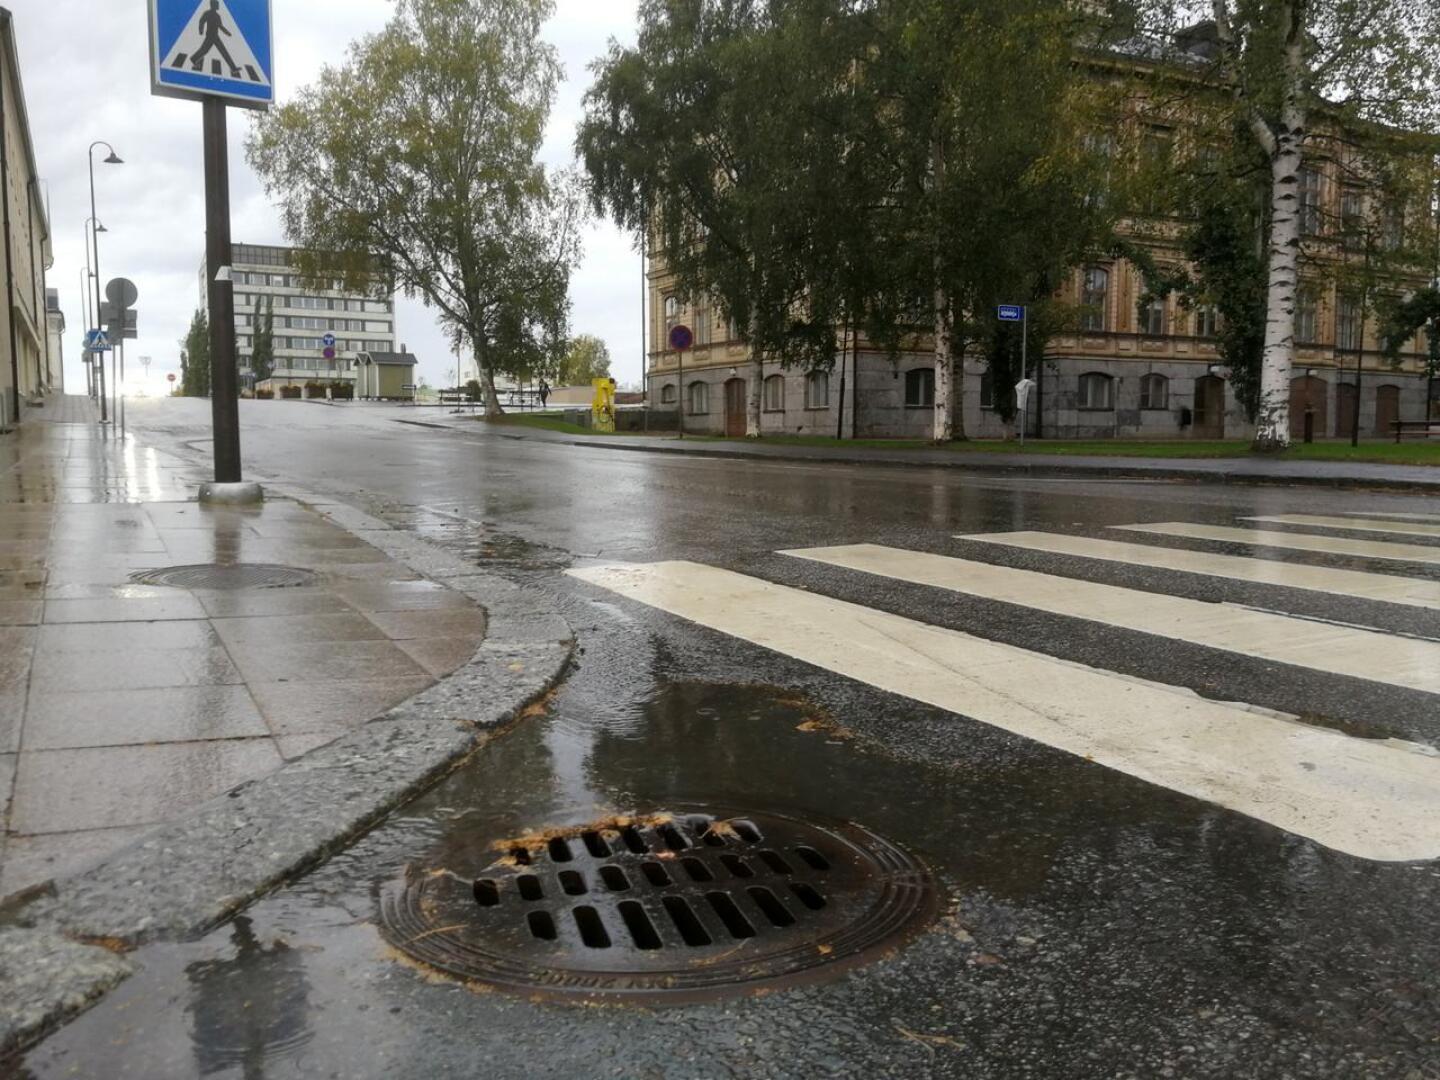 Sade-, sulamis- ja kuivatusvesien käsittely maksaa Pietarsaaressa enemmän kuin mitä kiinteistökohtaisilla hulevesimaksuilla kerätään. Raatihuoneella istuva kaupunginvaltuusto saanee eteensä korotusehdotuksen.